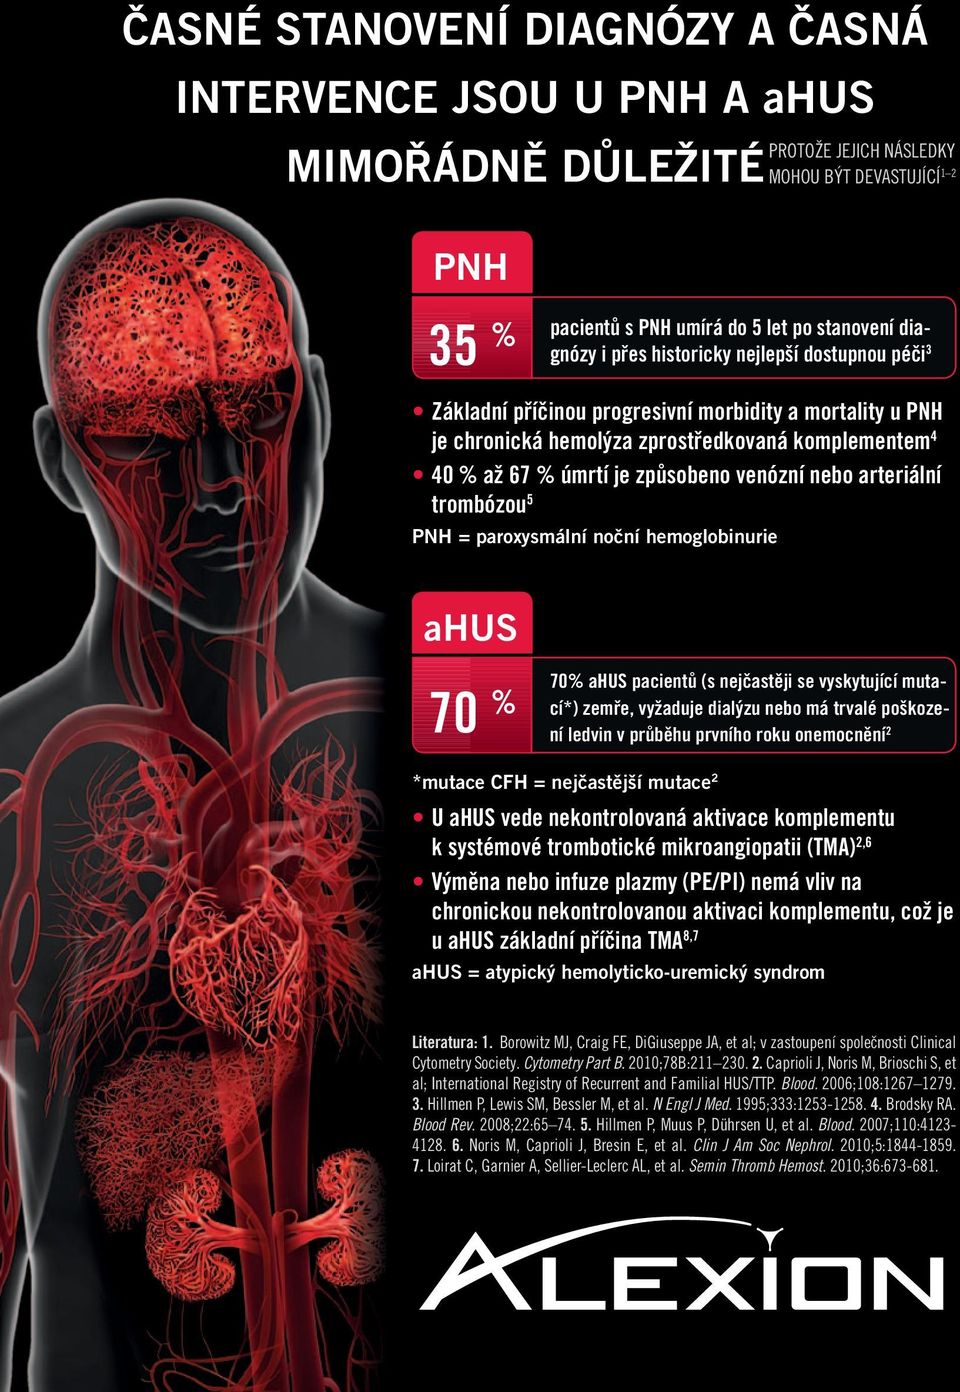 arteriální trombózou 5 PNH = paroxysmální noční hemoglobinurie ahus 70 % 70% ahus pacientů (s nejčastěji se vyskytující mutací*) zemře, vyžaduje dialýzu nebo má trvalé poškození ledvin v průběhu